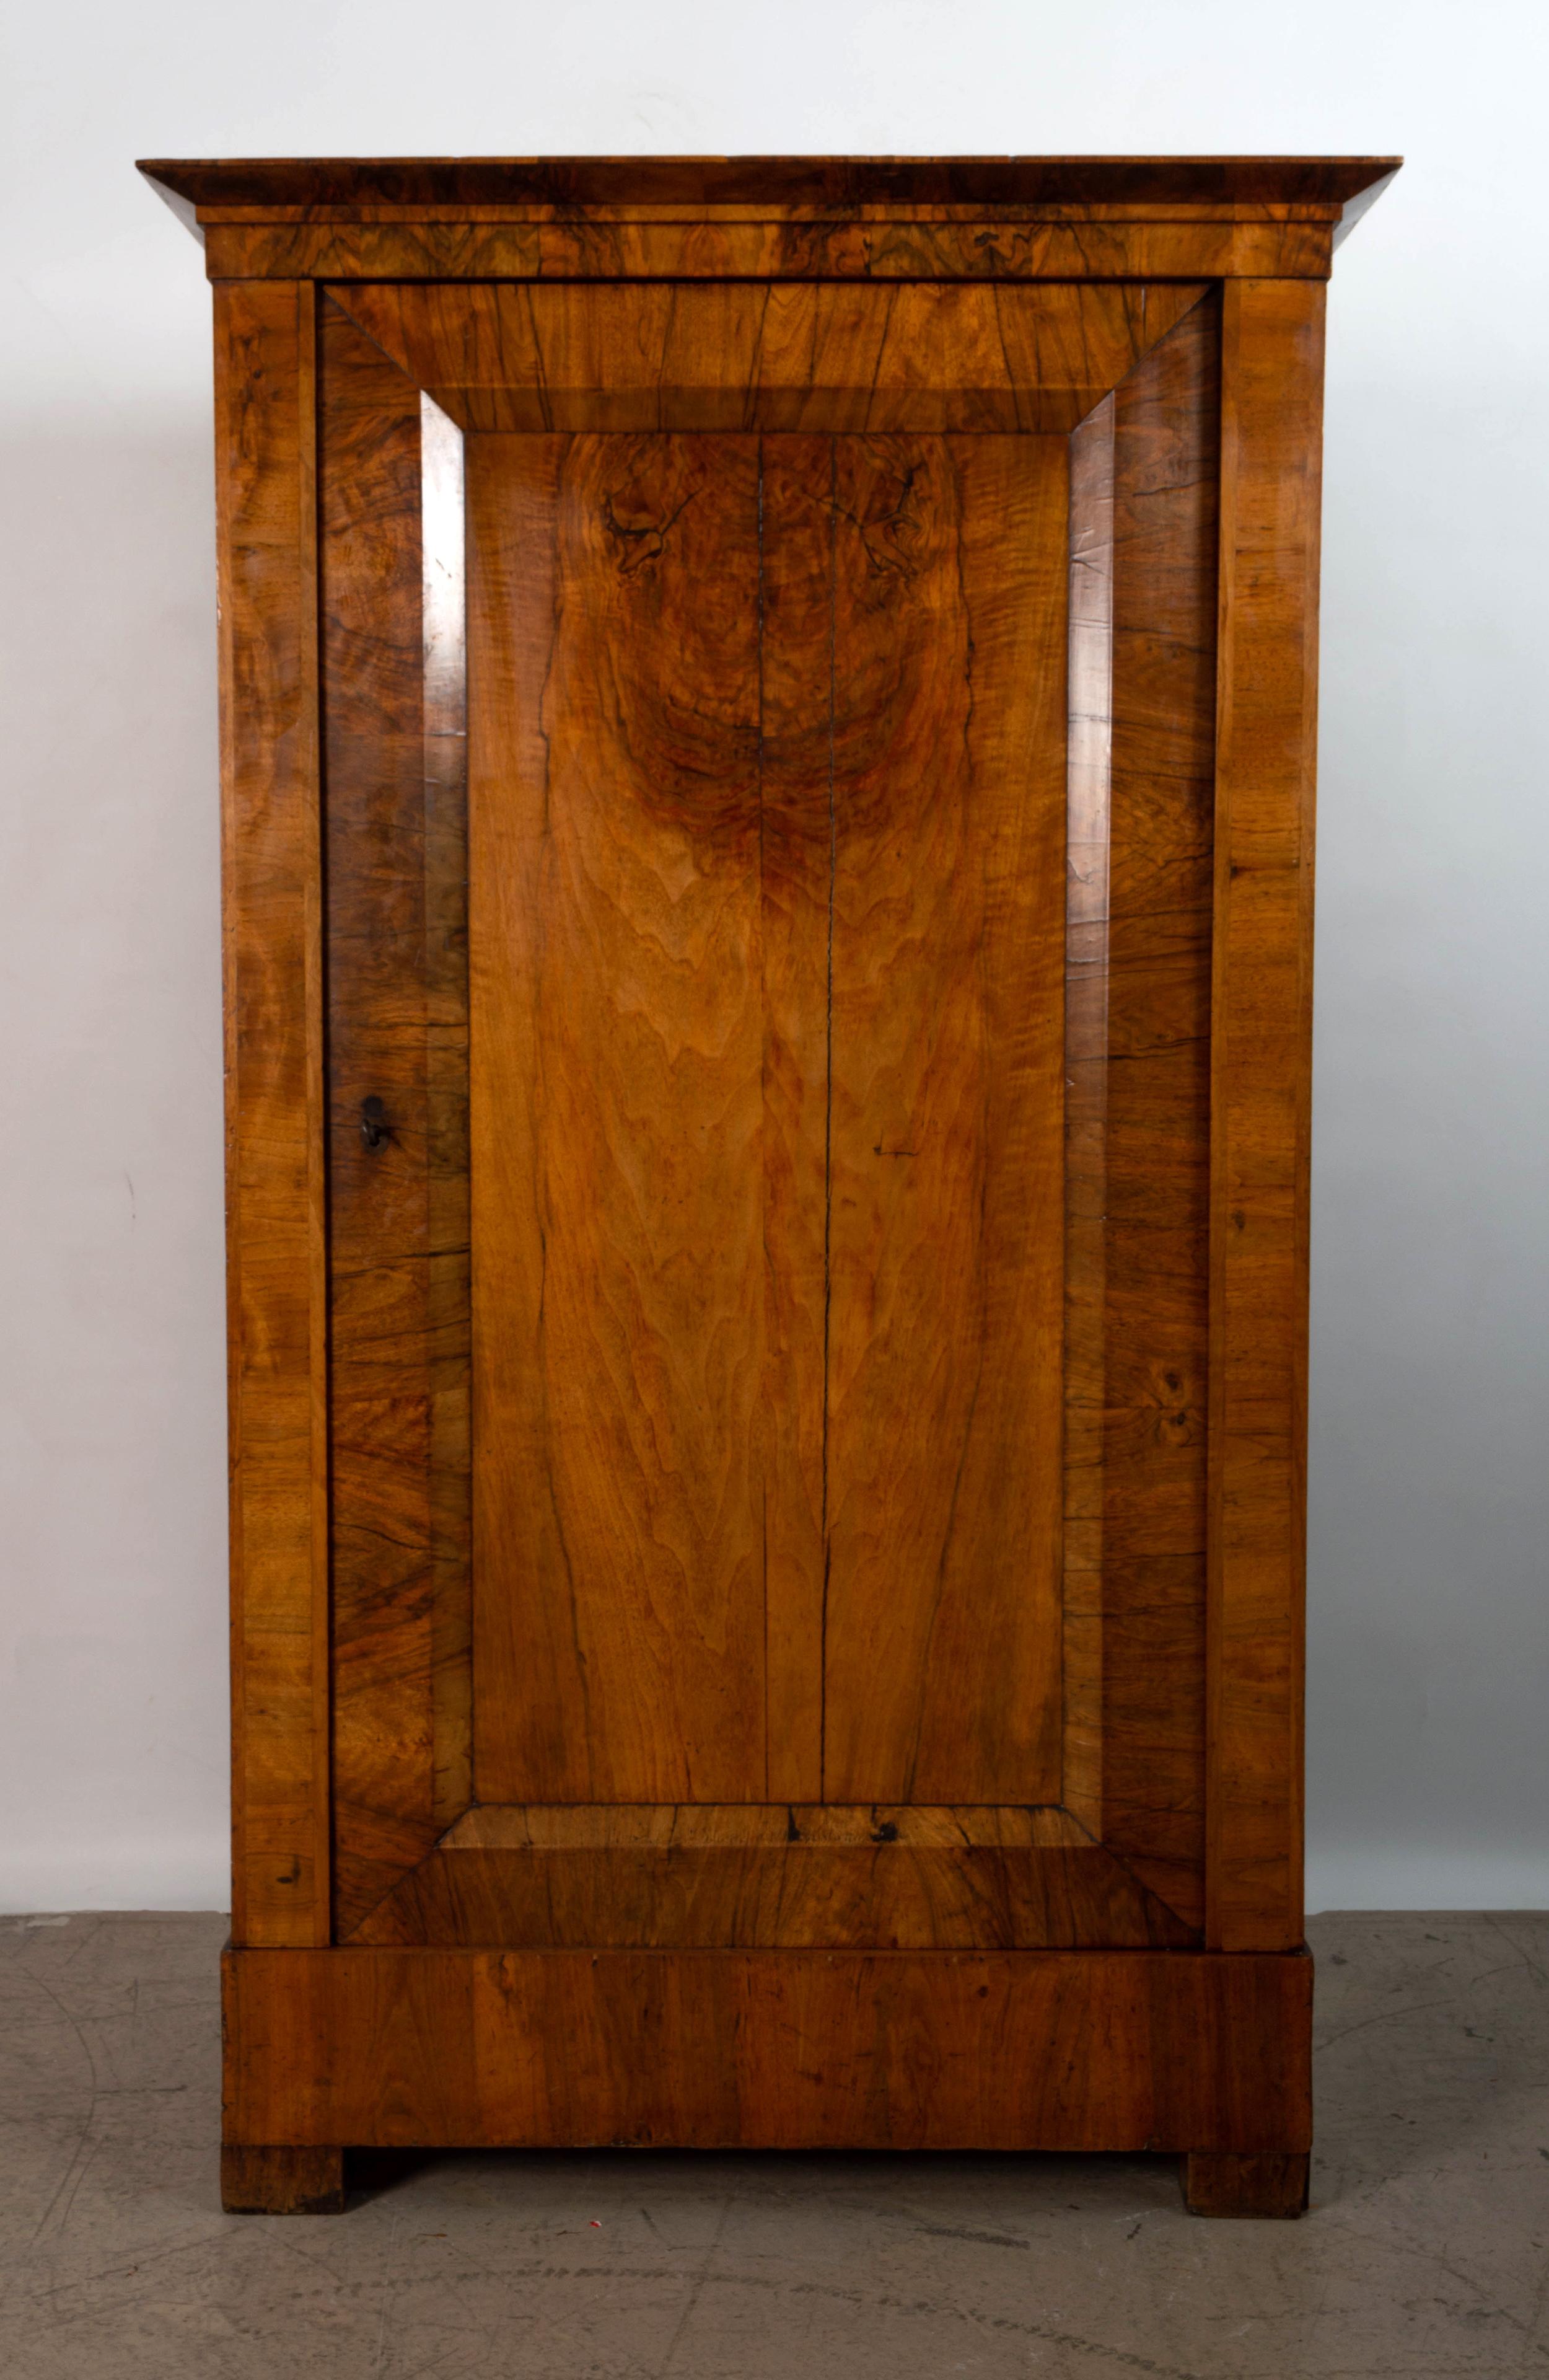 Antiquité 19ème siècle Danois armoire placard en noyer figuré C.1860

Une armoire danoise à une seule porte. Construit à partir du plus beau noyer figuré.

L'intérieur est aménagé pour une étagère, au-dessus d'un tiroir de base, sur des pieds en